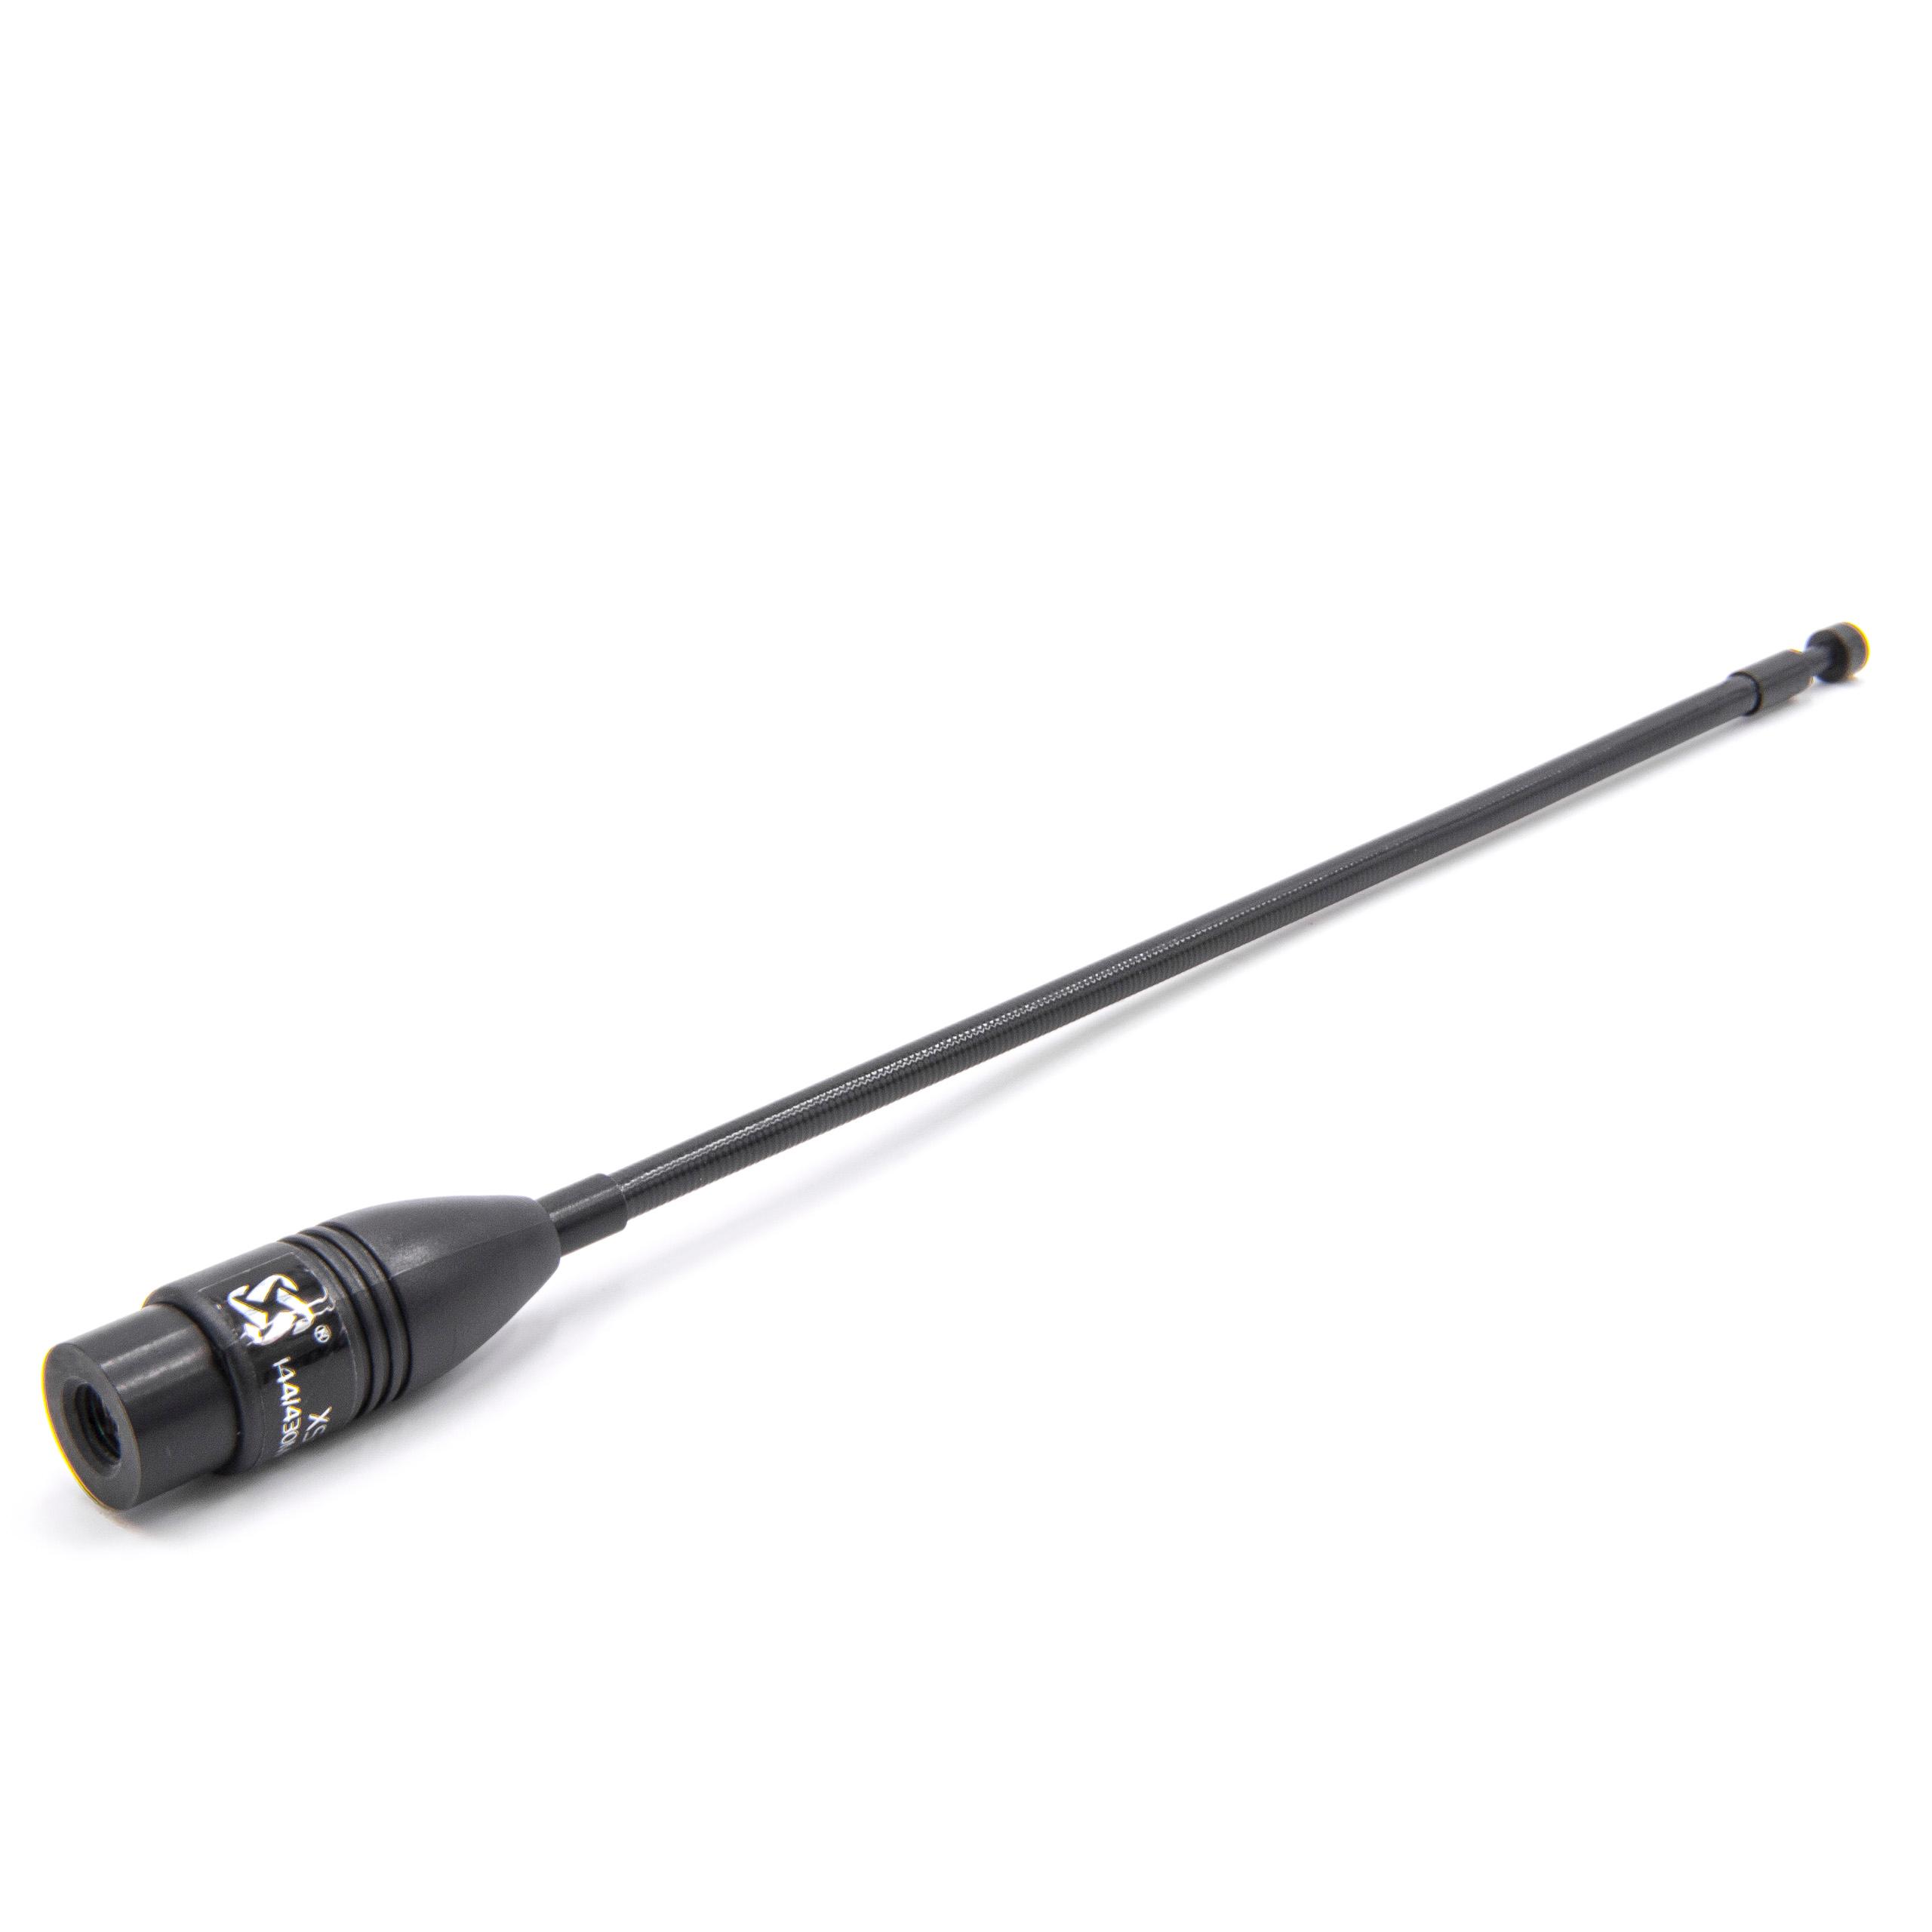 Antenne pour talkie-walkie Wouxun, Baofeng UVD1P etc. - connecteur SMA (m), 21 extensible - 37cm